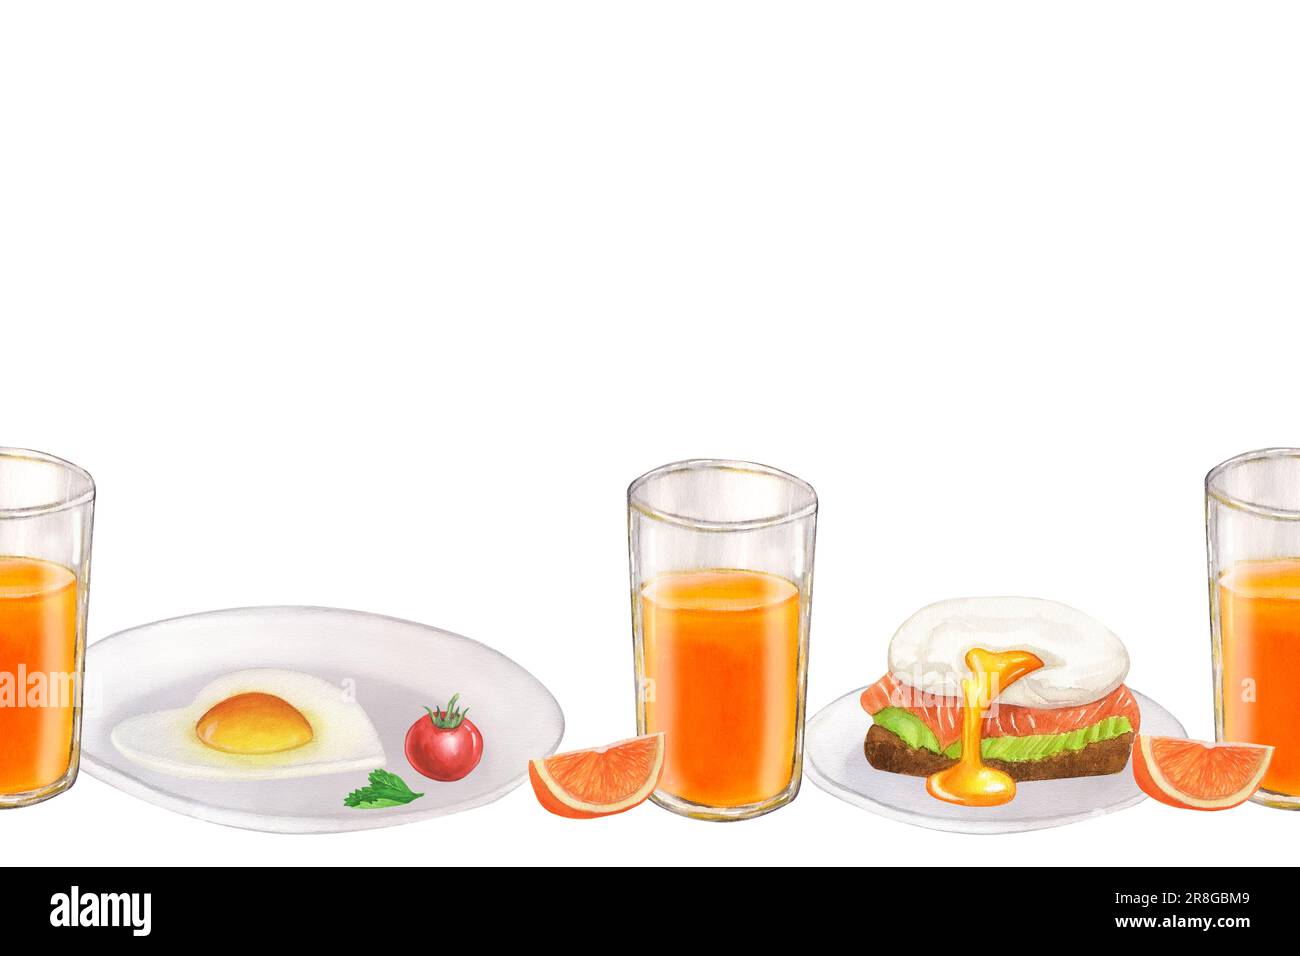 Banner Nahtloses Border Breakfast Food Collection, Morgenmahlzeiten Eier, Saft, Orangen, Tomaten. Handgezeichnete Aquarelldarstellung isoliert auf weißem Rücken Stockfoto